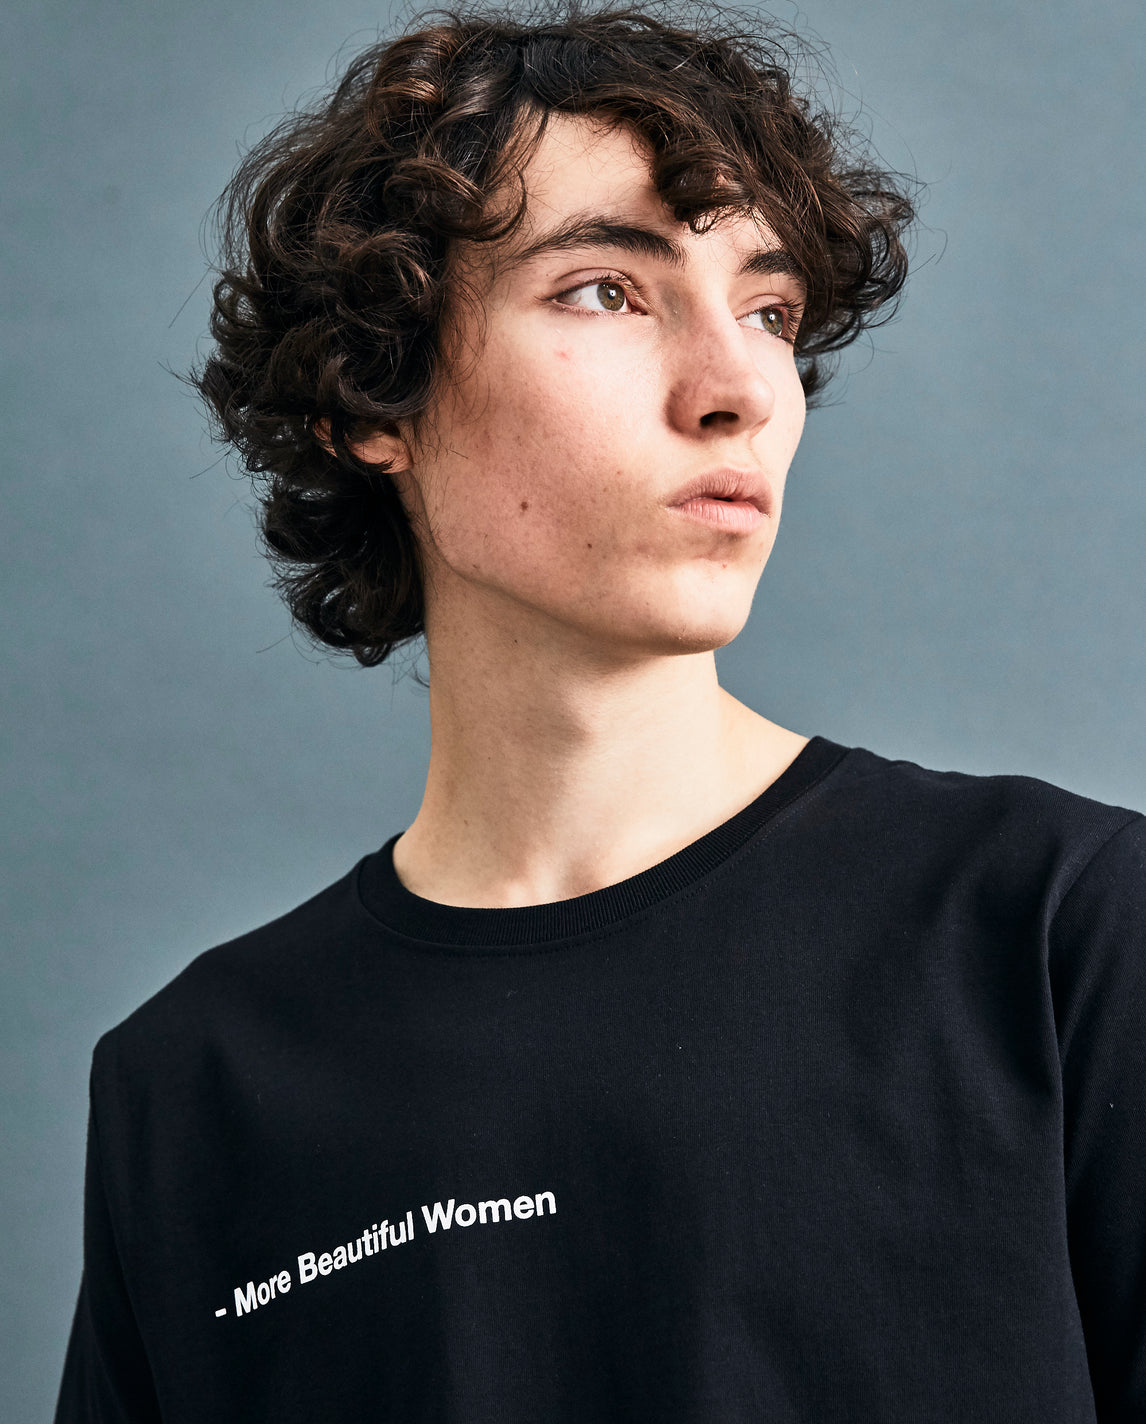 Black 'More Beautiful Women' T-shirt